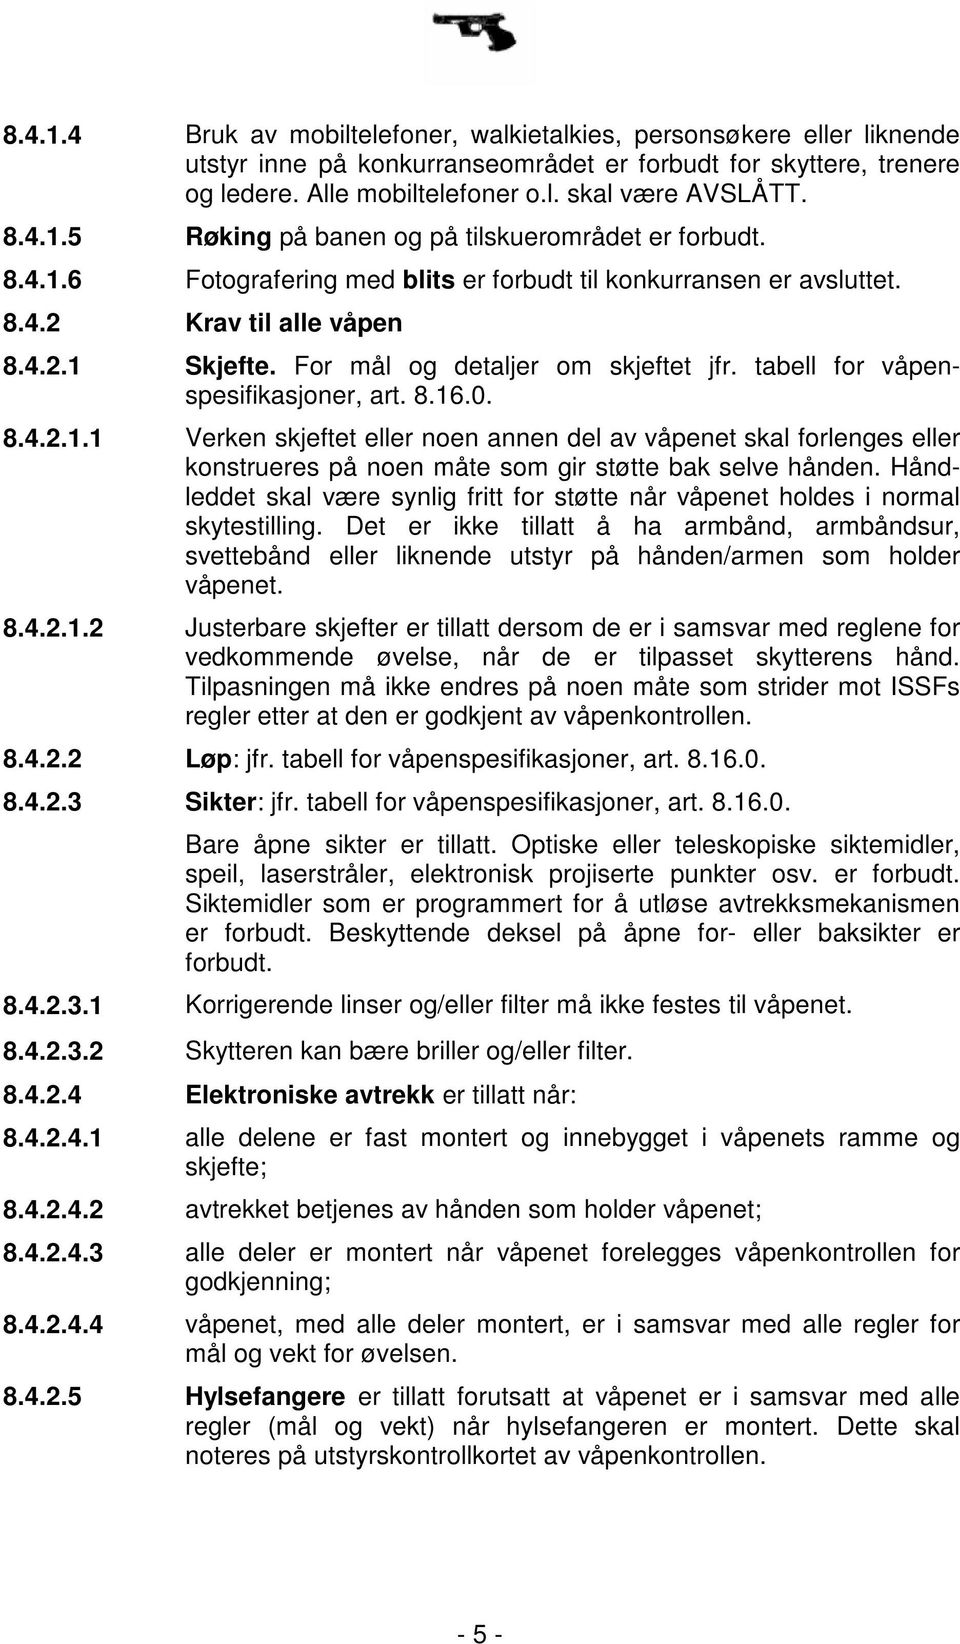 For mål og detaljer om skjeftet jfr. tabell for våpenspesifikasjoner, art. 8.16